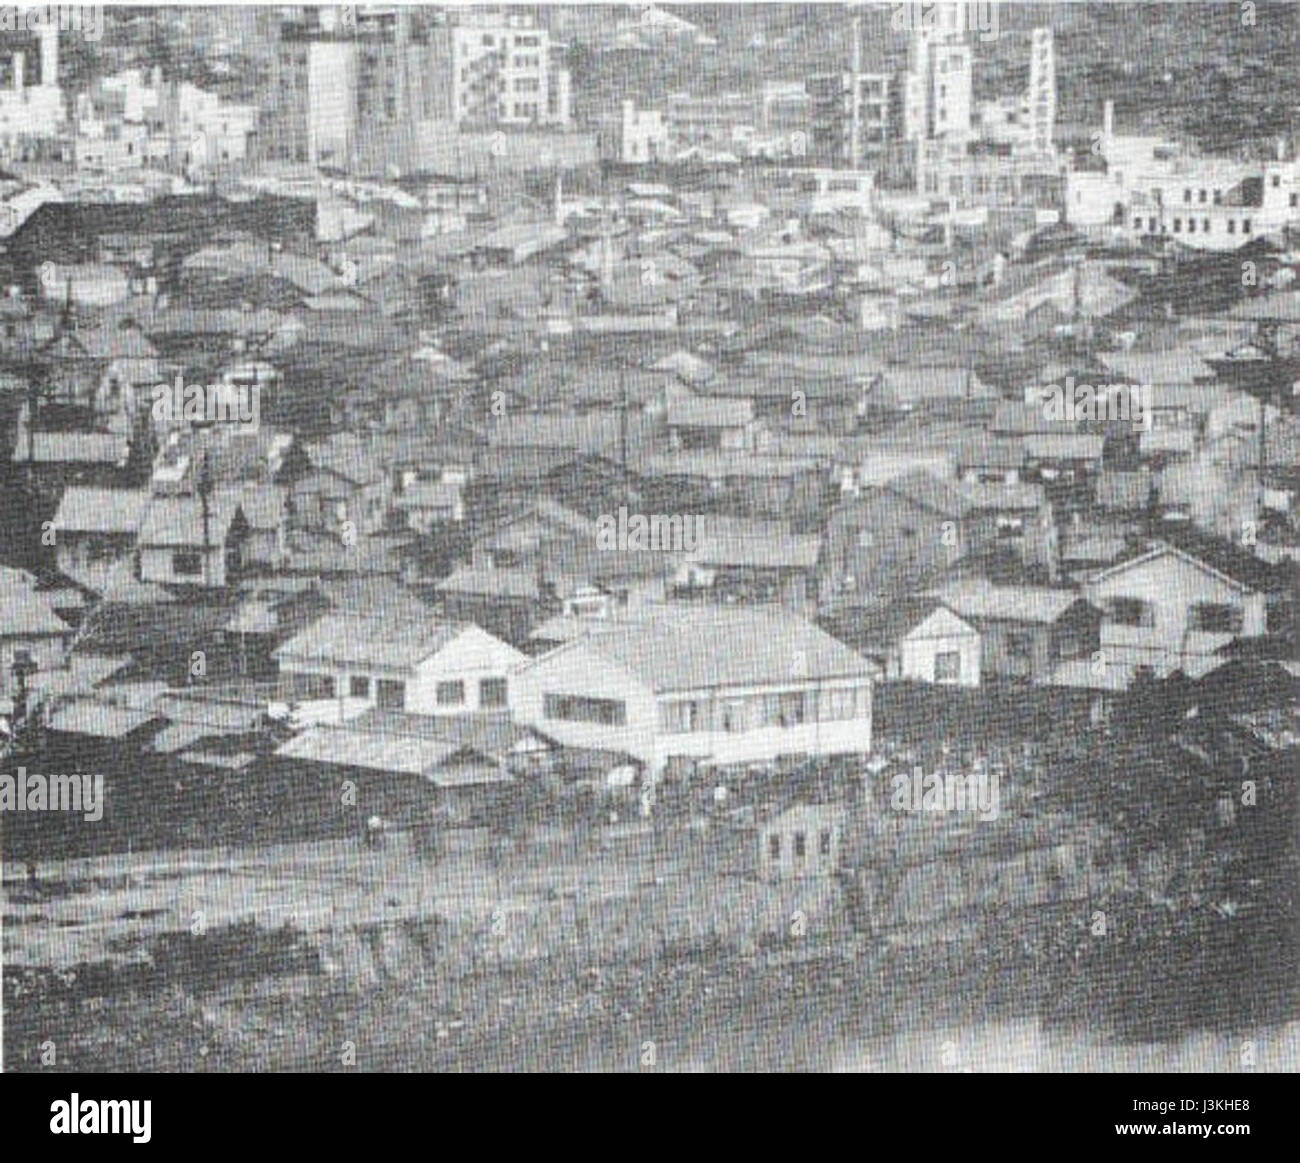 Hirosima before the atomic bombing Stock Photo